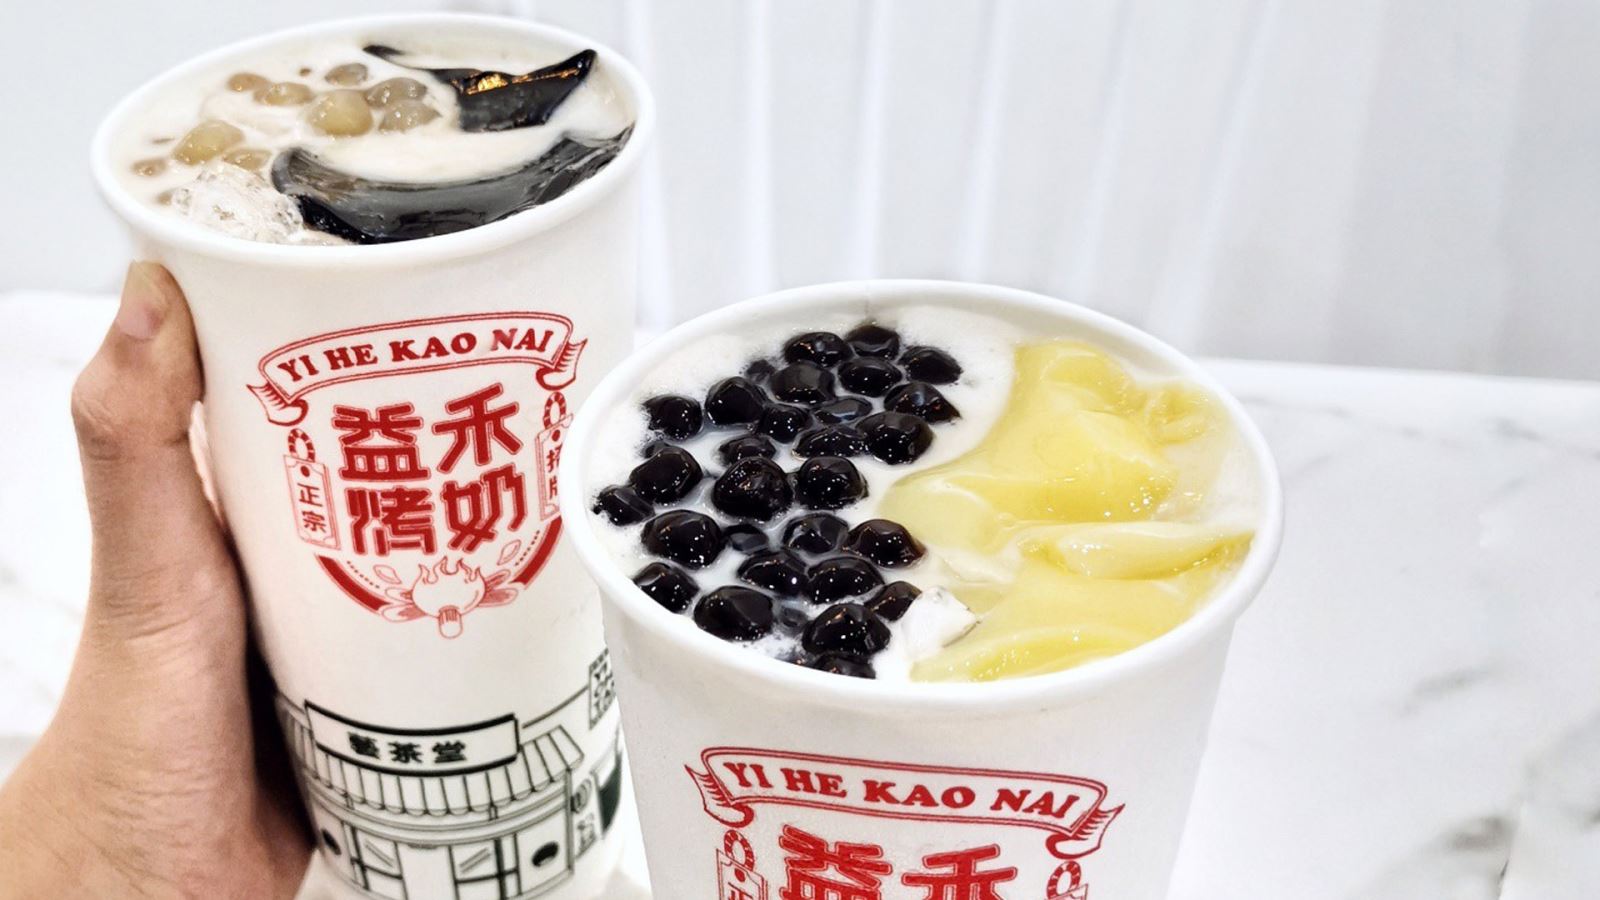 Yi He Kao Nai là thương hiệu trà sữa nổi tiếng của Đài Loan tại Việt Nam